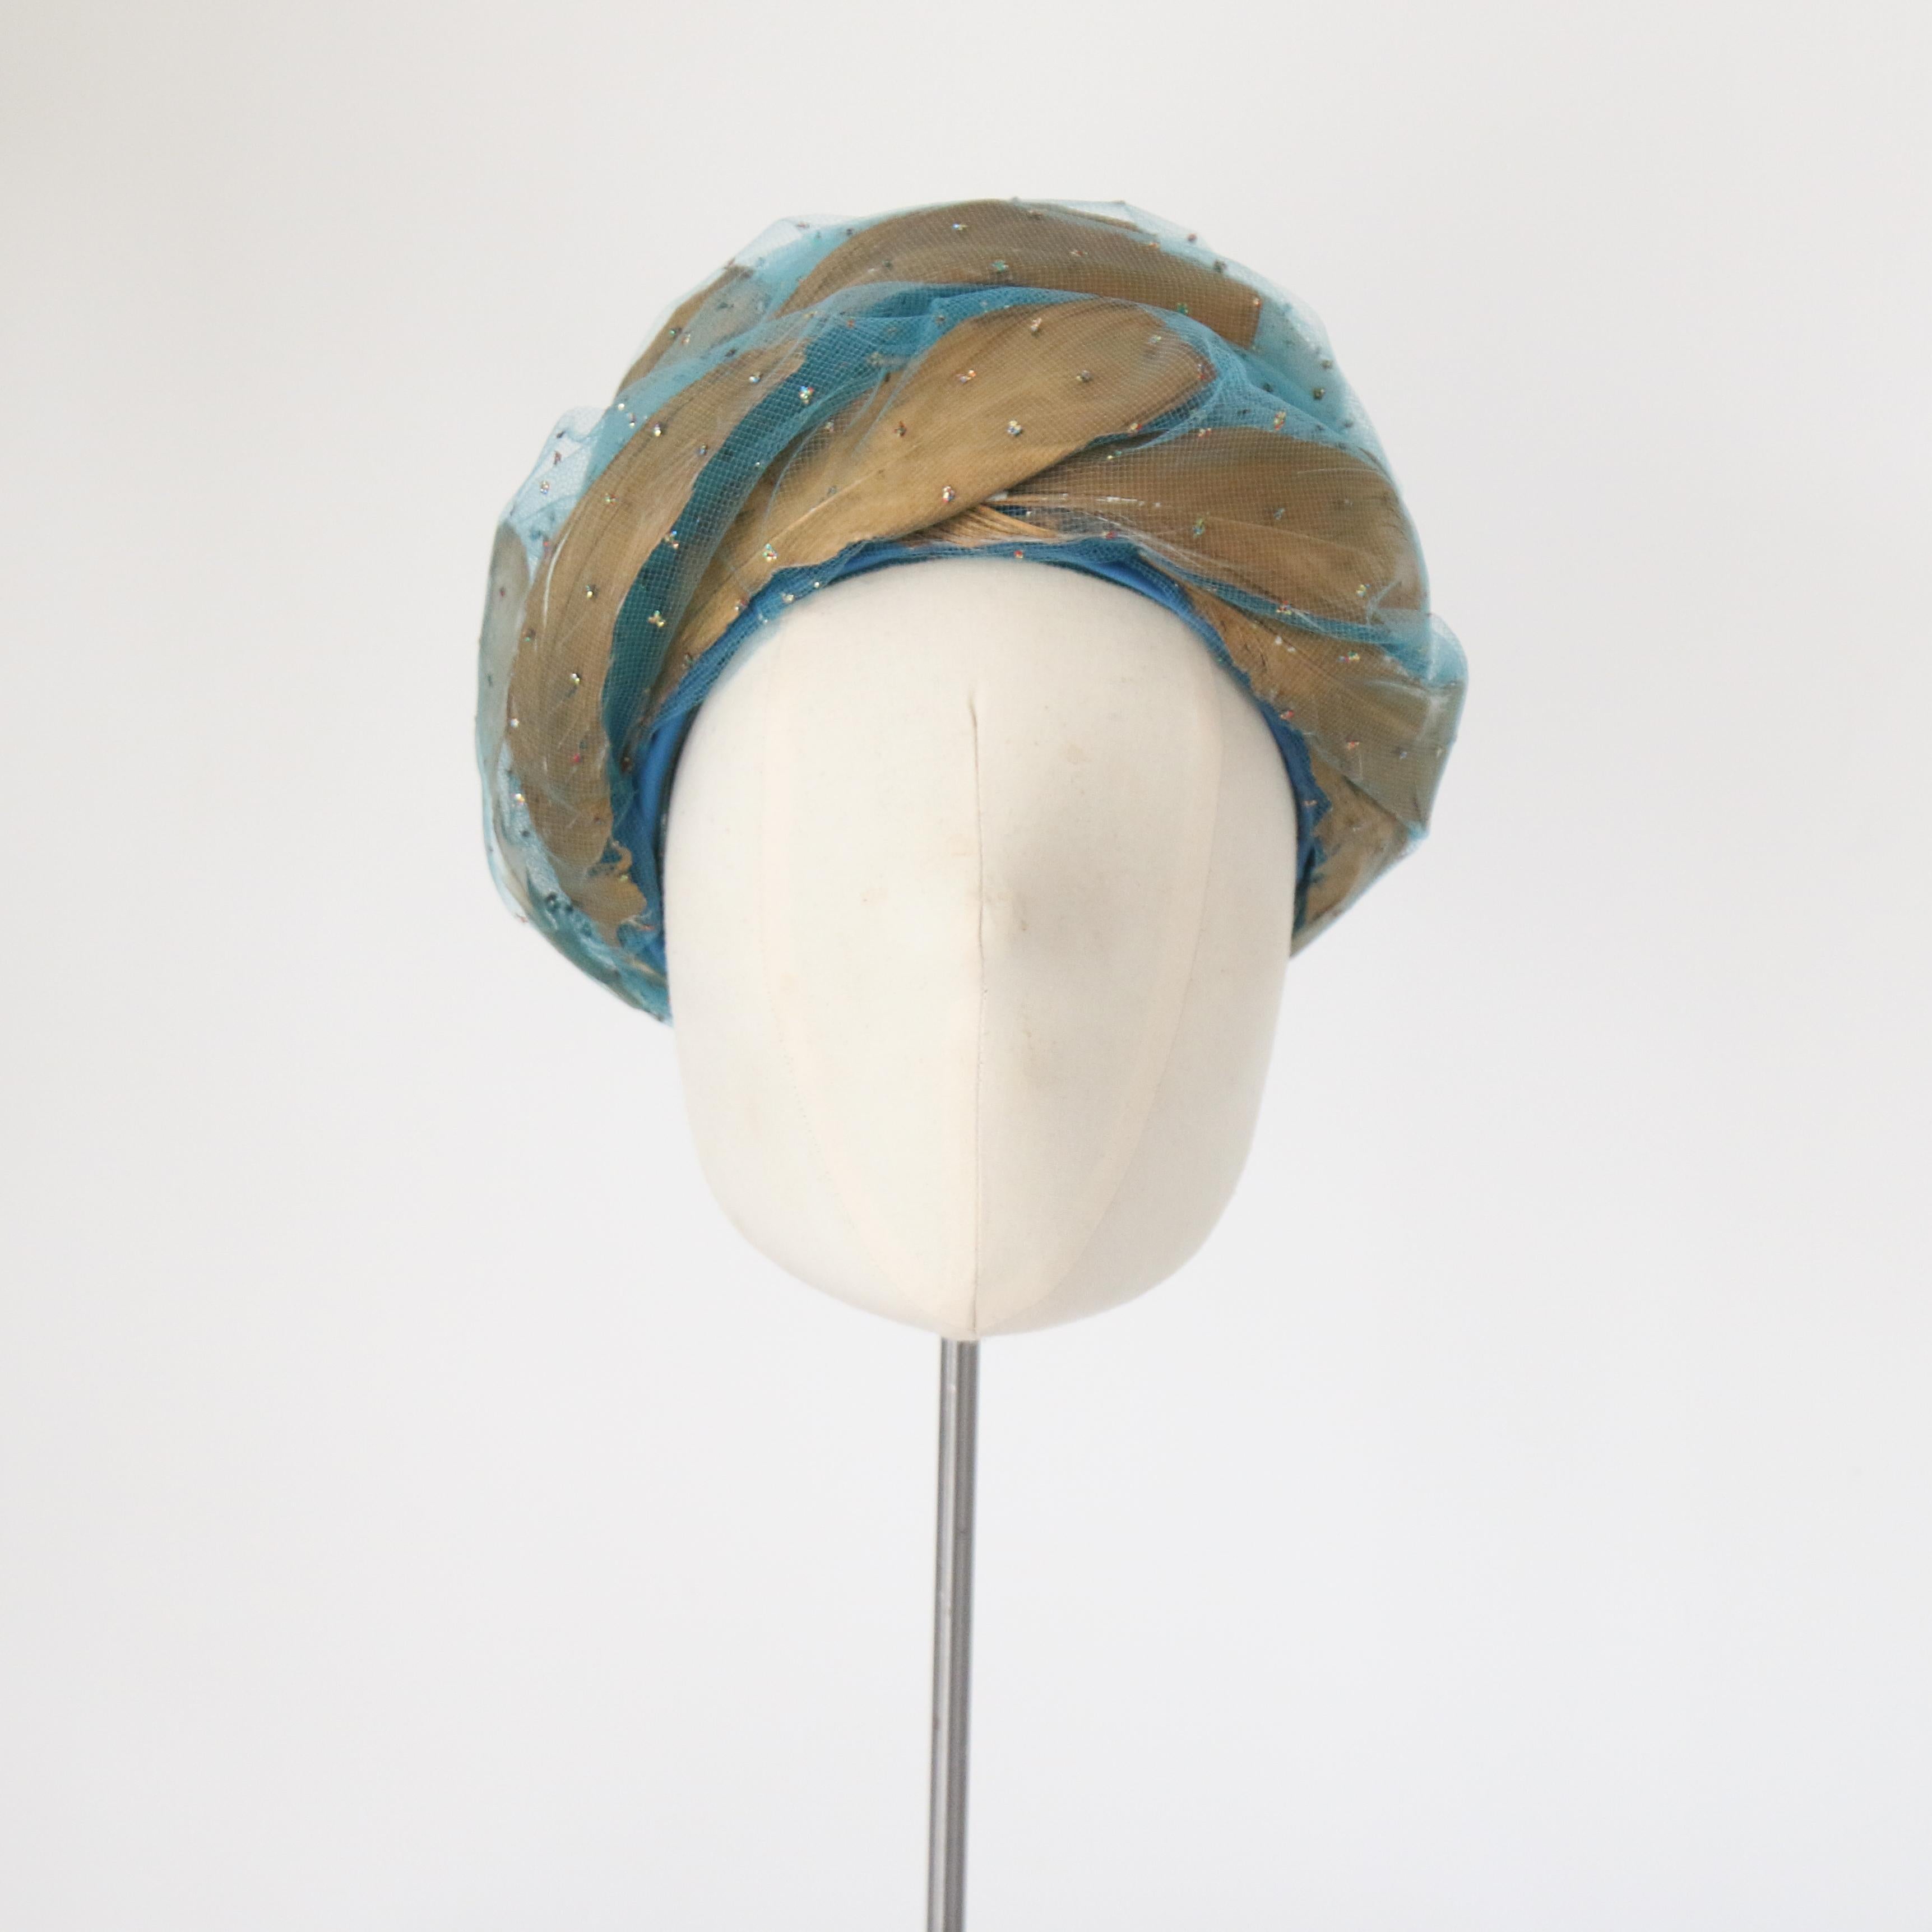 Cet époustouflant turban en tulle turquoise de Christian Dior, datant des années 1960, présente un design structurel en spirale avec des plumes métalliques dorées entrelacées et des points de paillettes multicolores irisées. Il s'agit d'une pièce